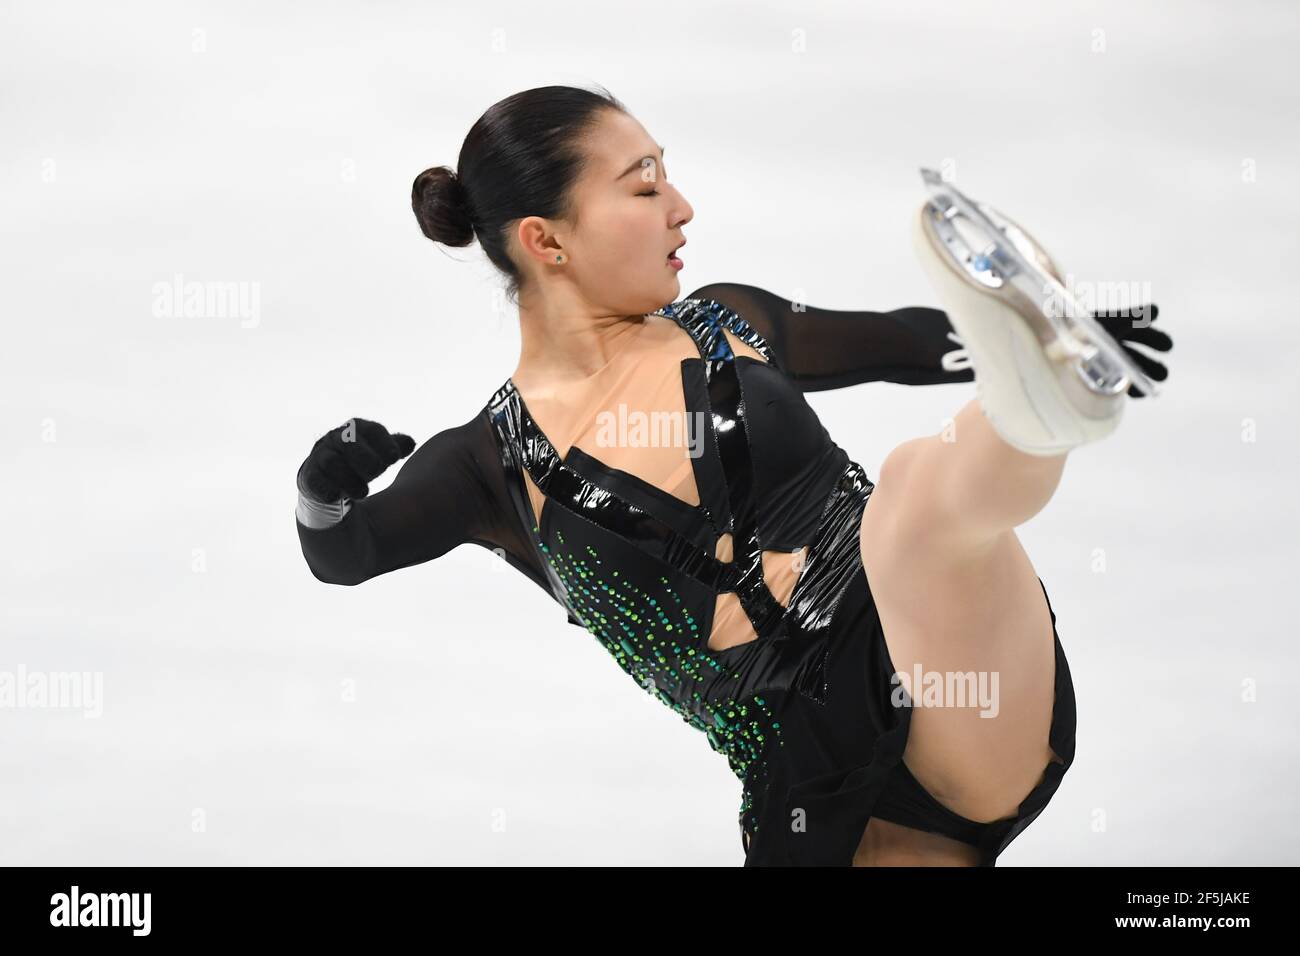 Kaori SAKAMOTO from Japan, during Ladies Free Program at the ISU World Figure Skating Championships 2021